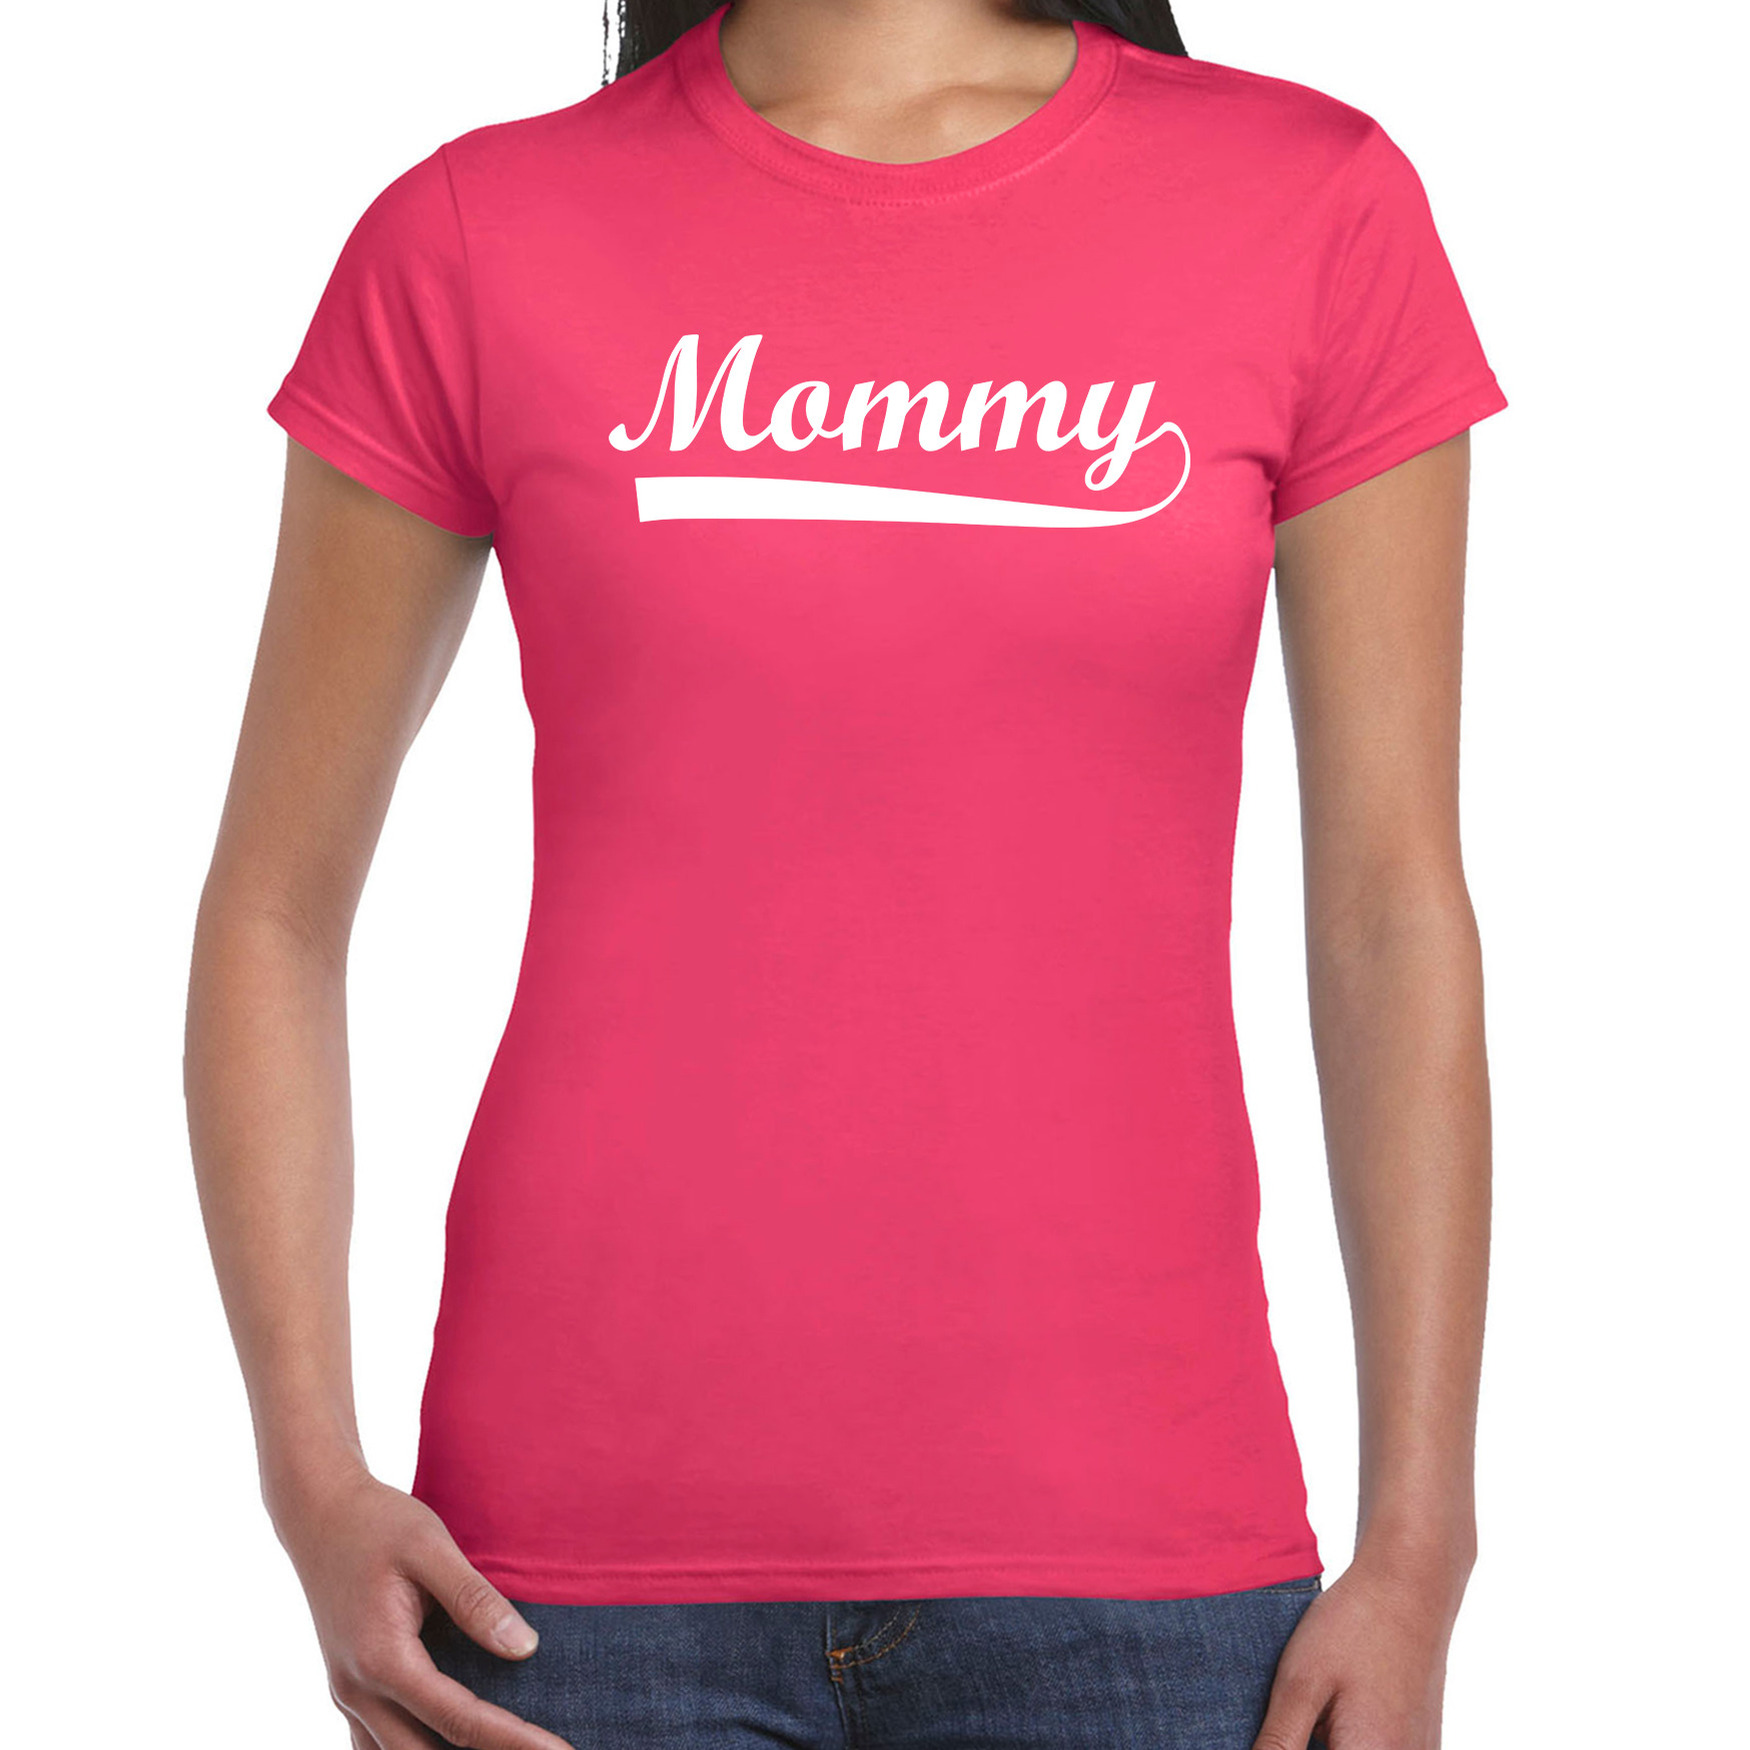 Mommy t-shirt fuchsia roze voor dames moederdag cadeau shirt mama